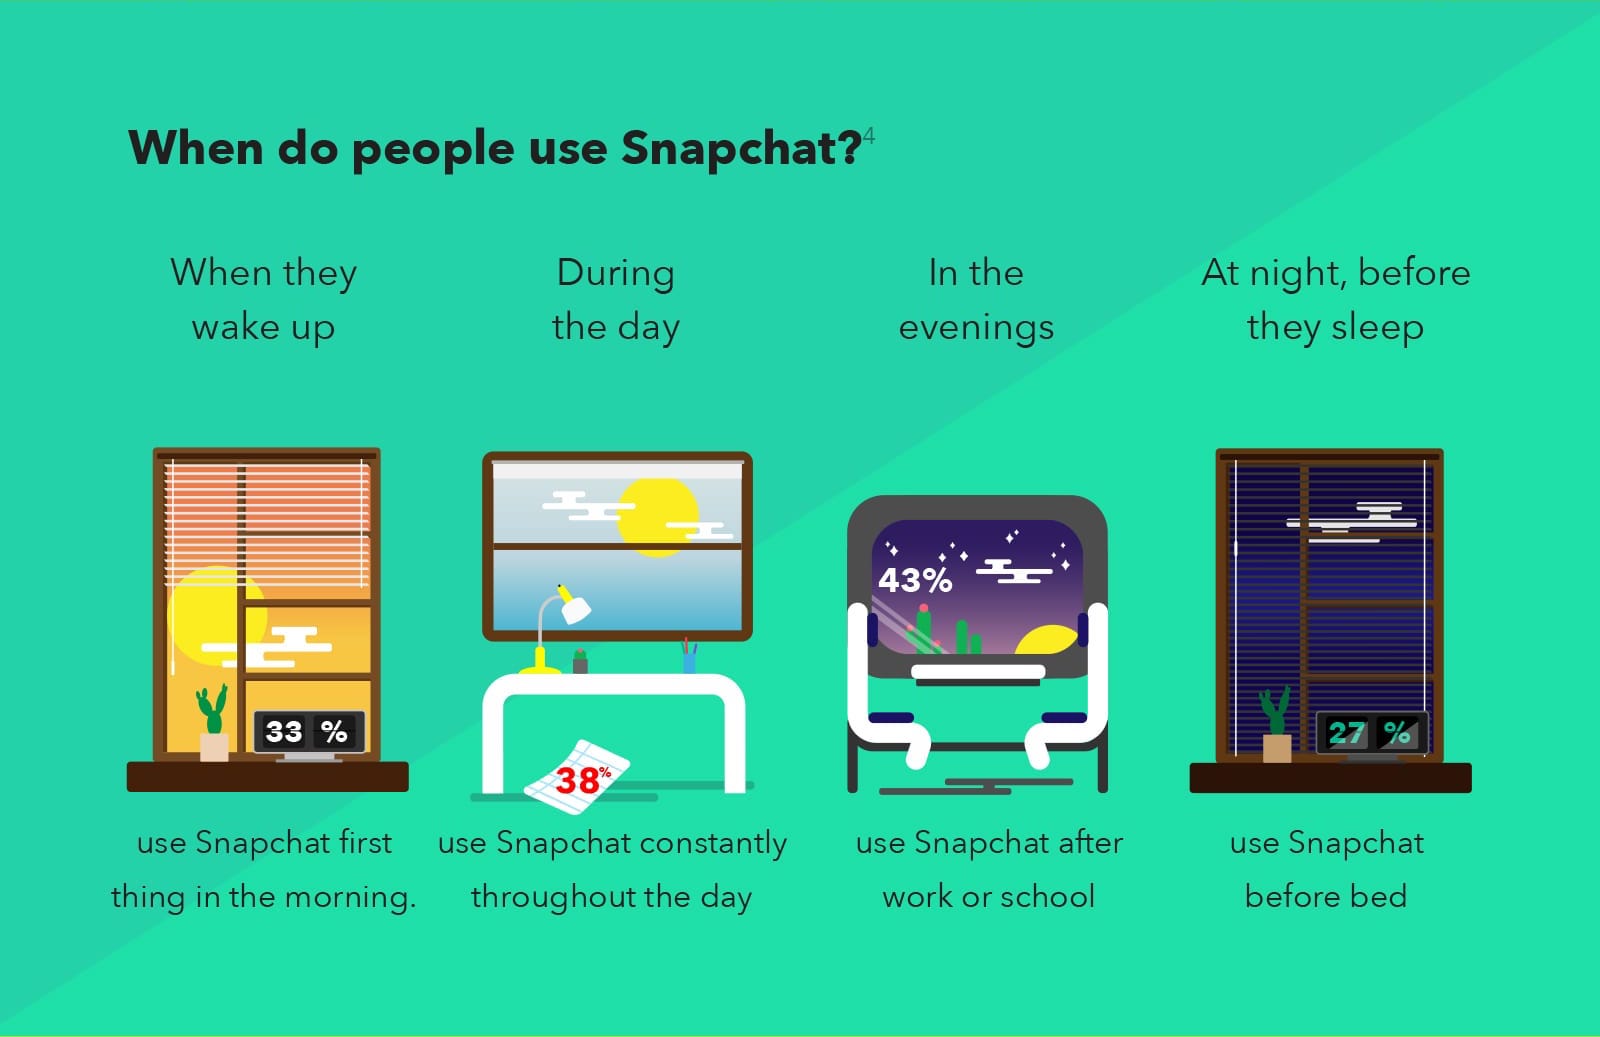 Stratégie Snapchat : qui sont les utilisateurs que vous souhaitez cibler ?